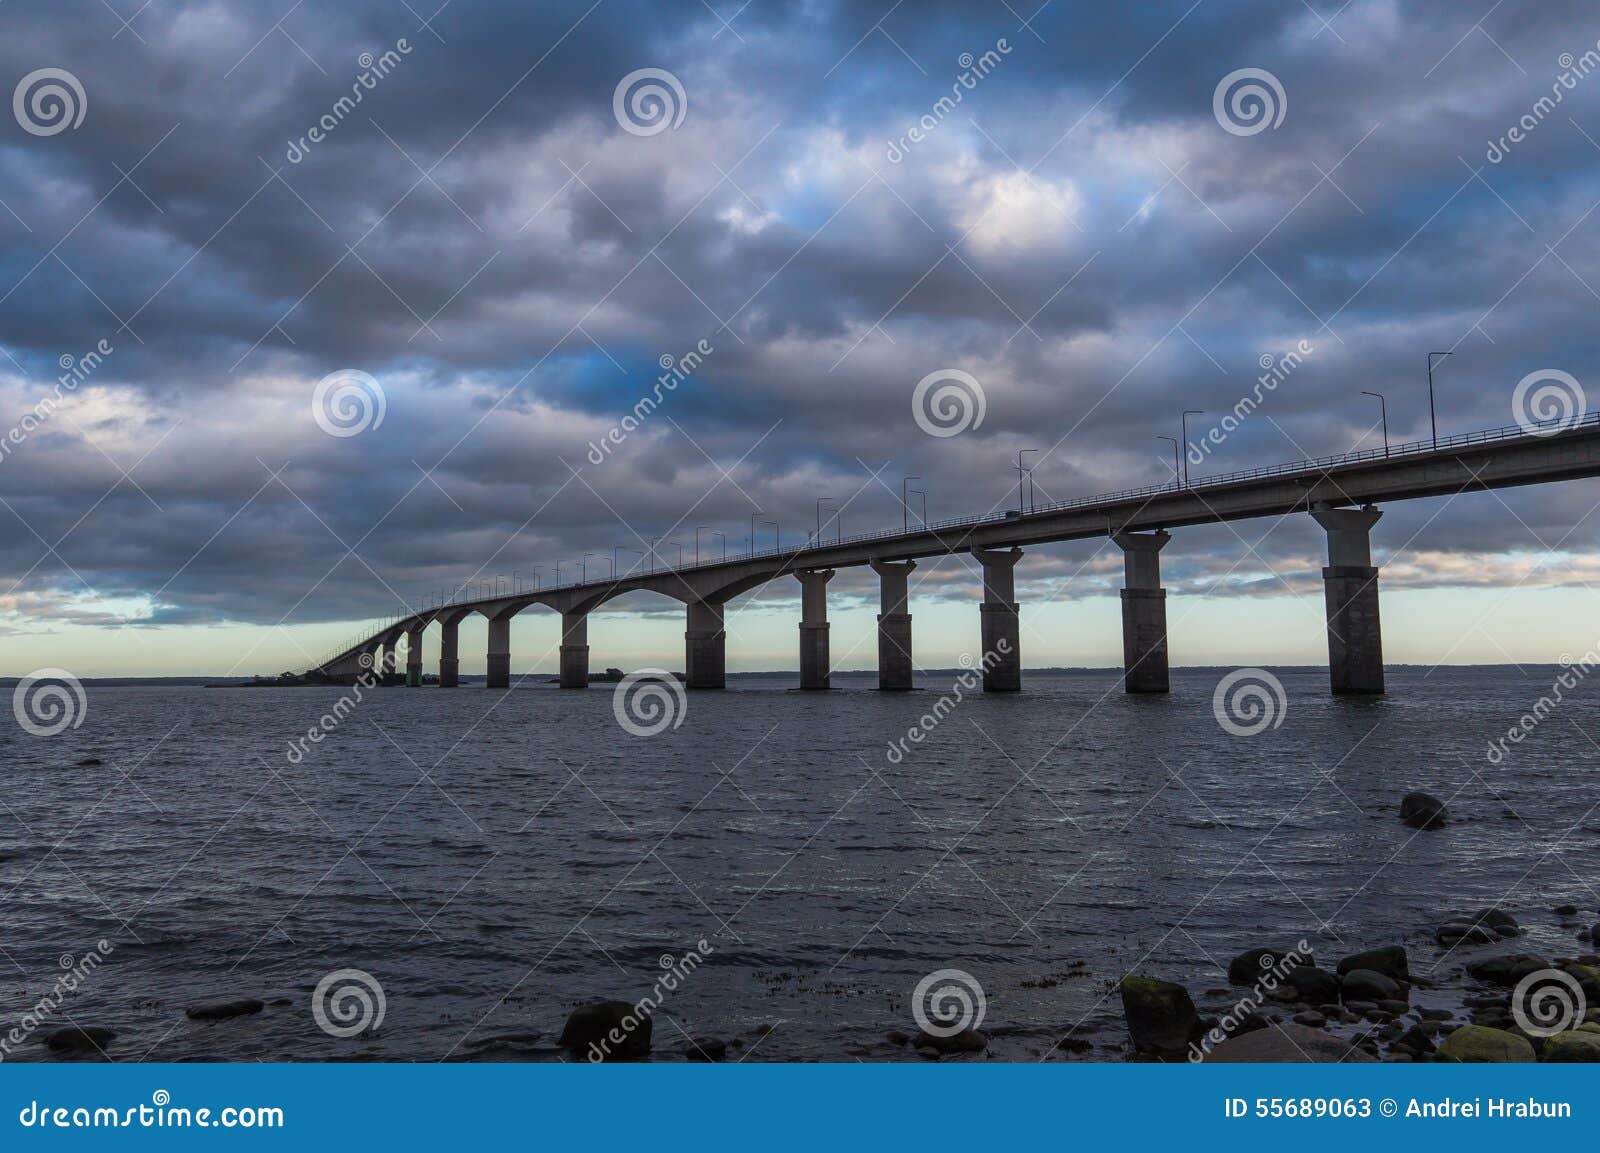 the oland bridge, kalmar, sweden